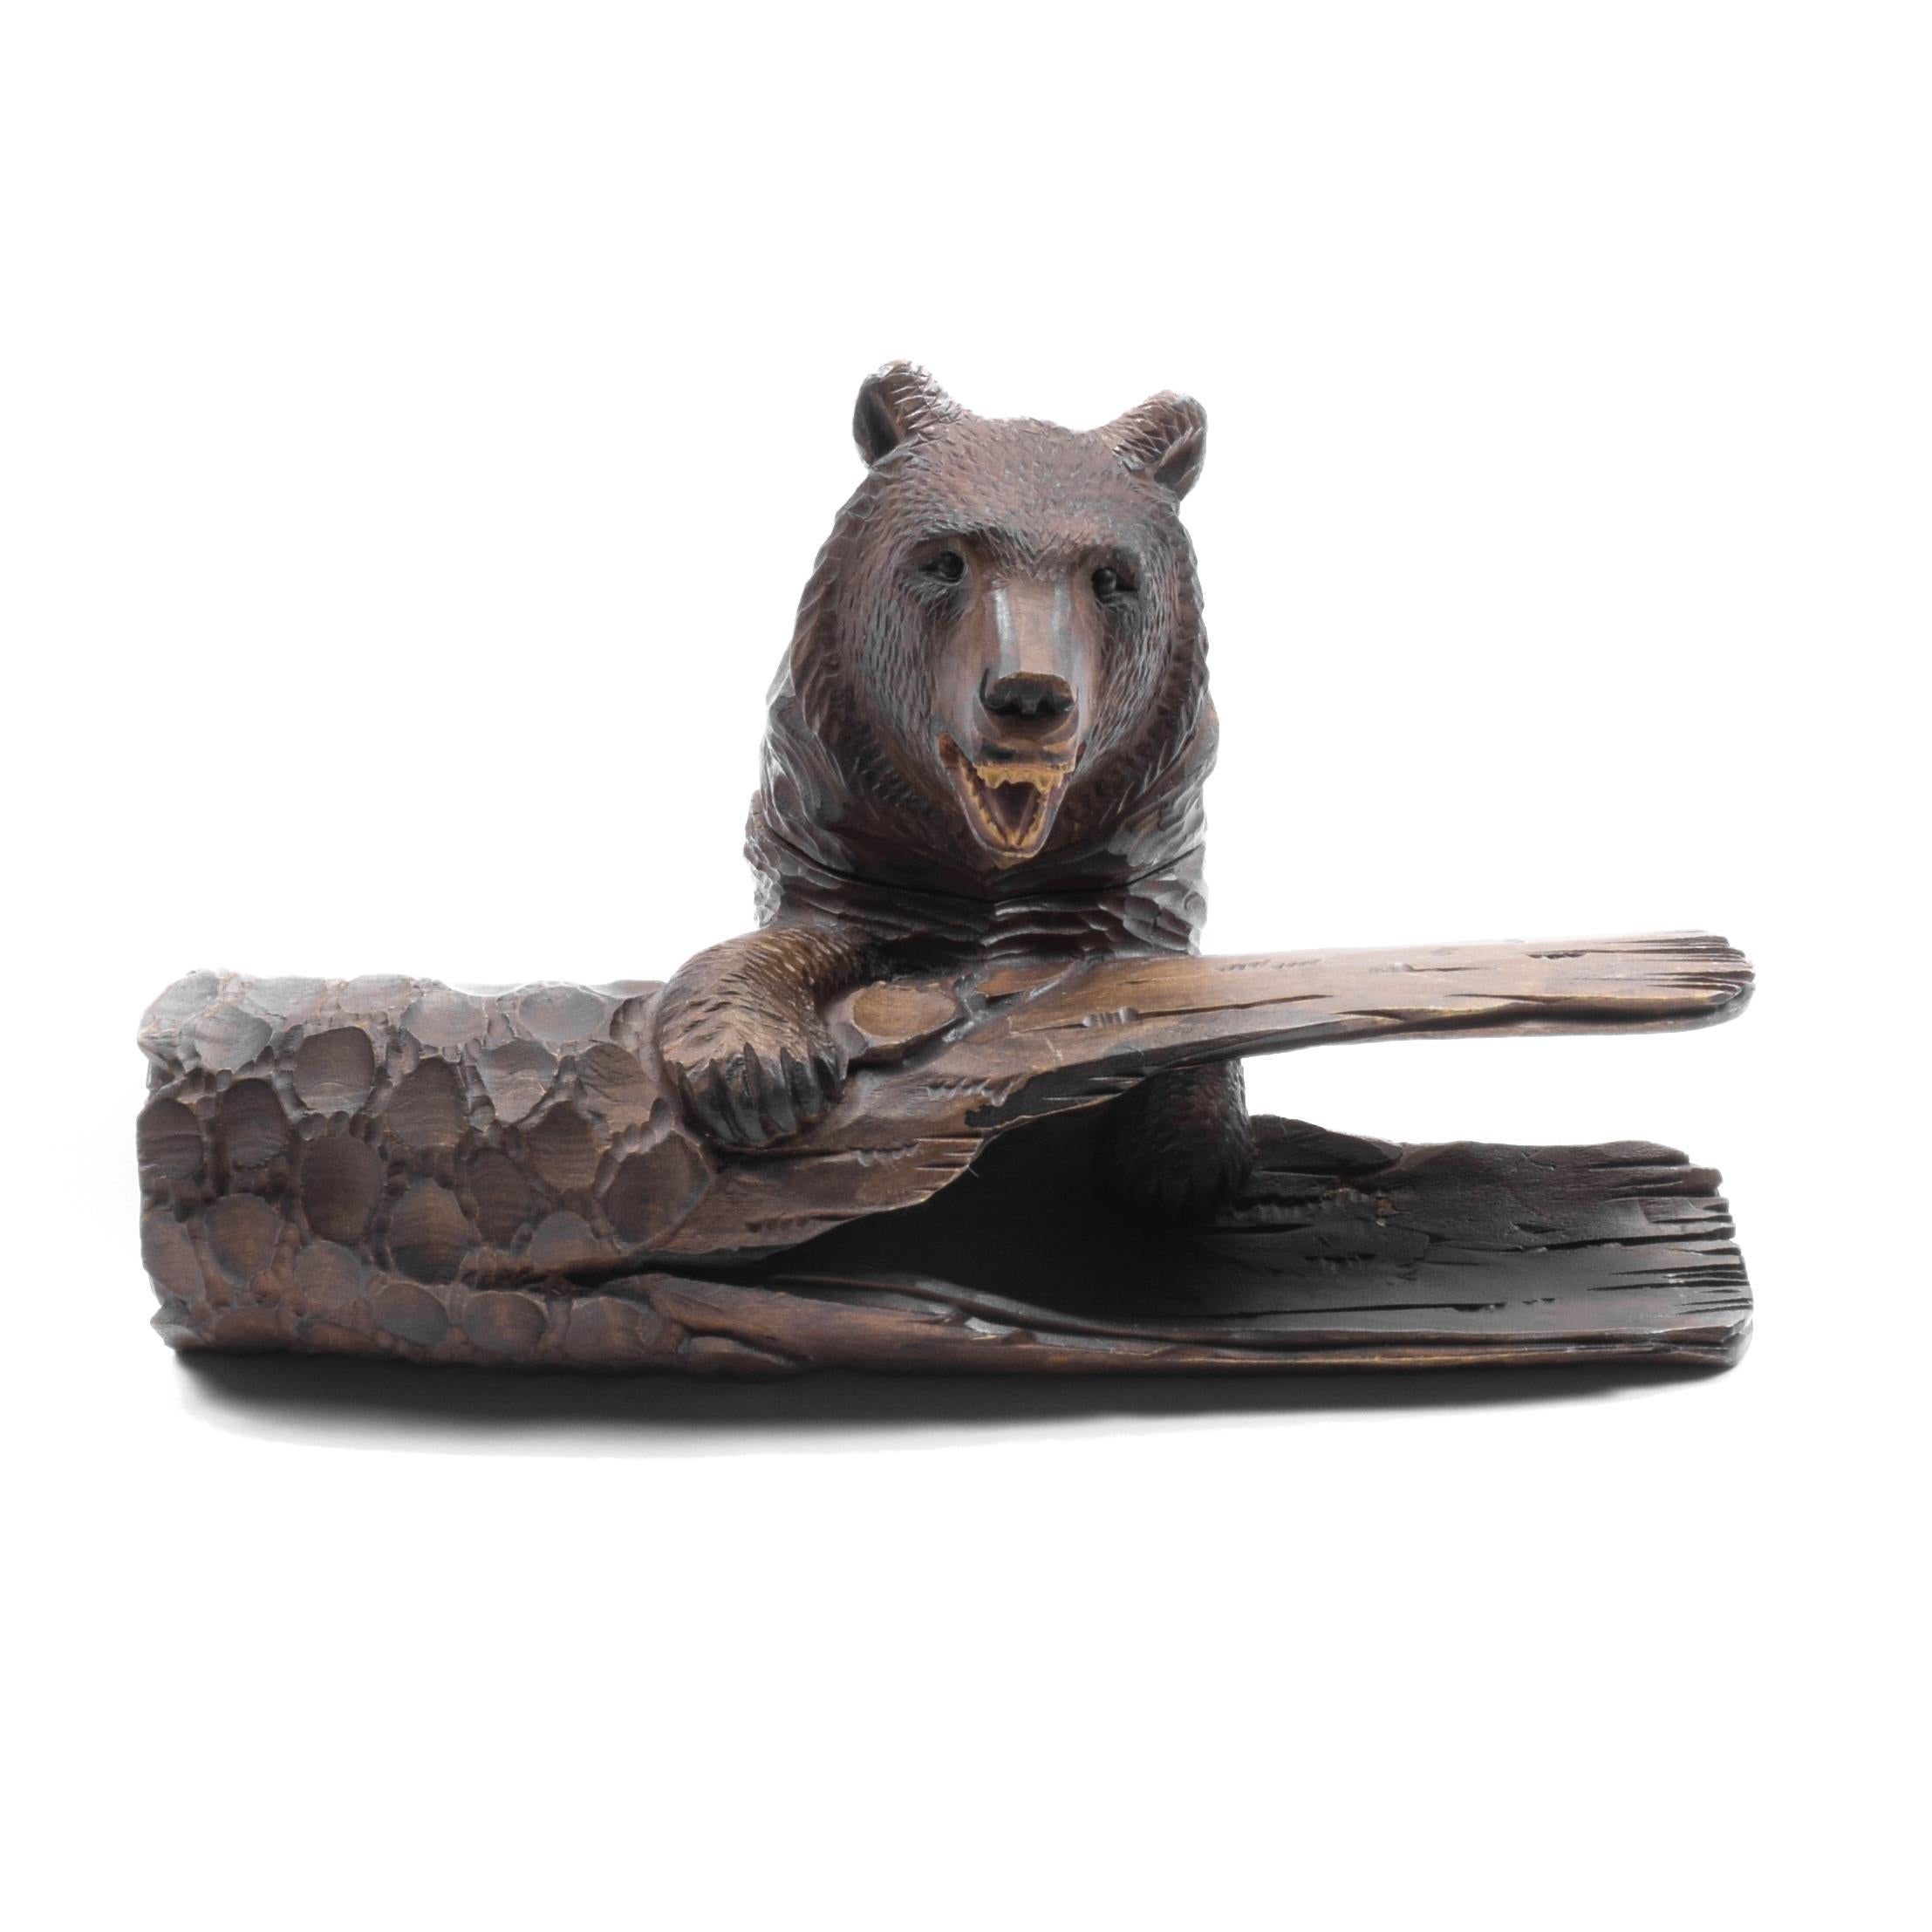 Ours suisse avec porte-plume et encrier en bois. Publié dans 